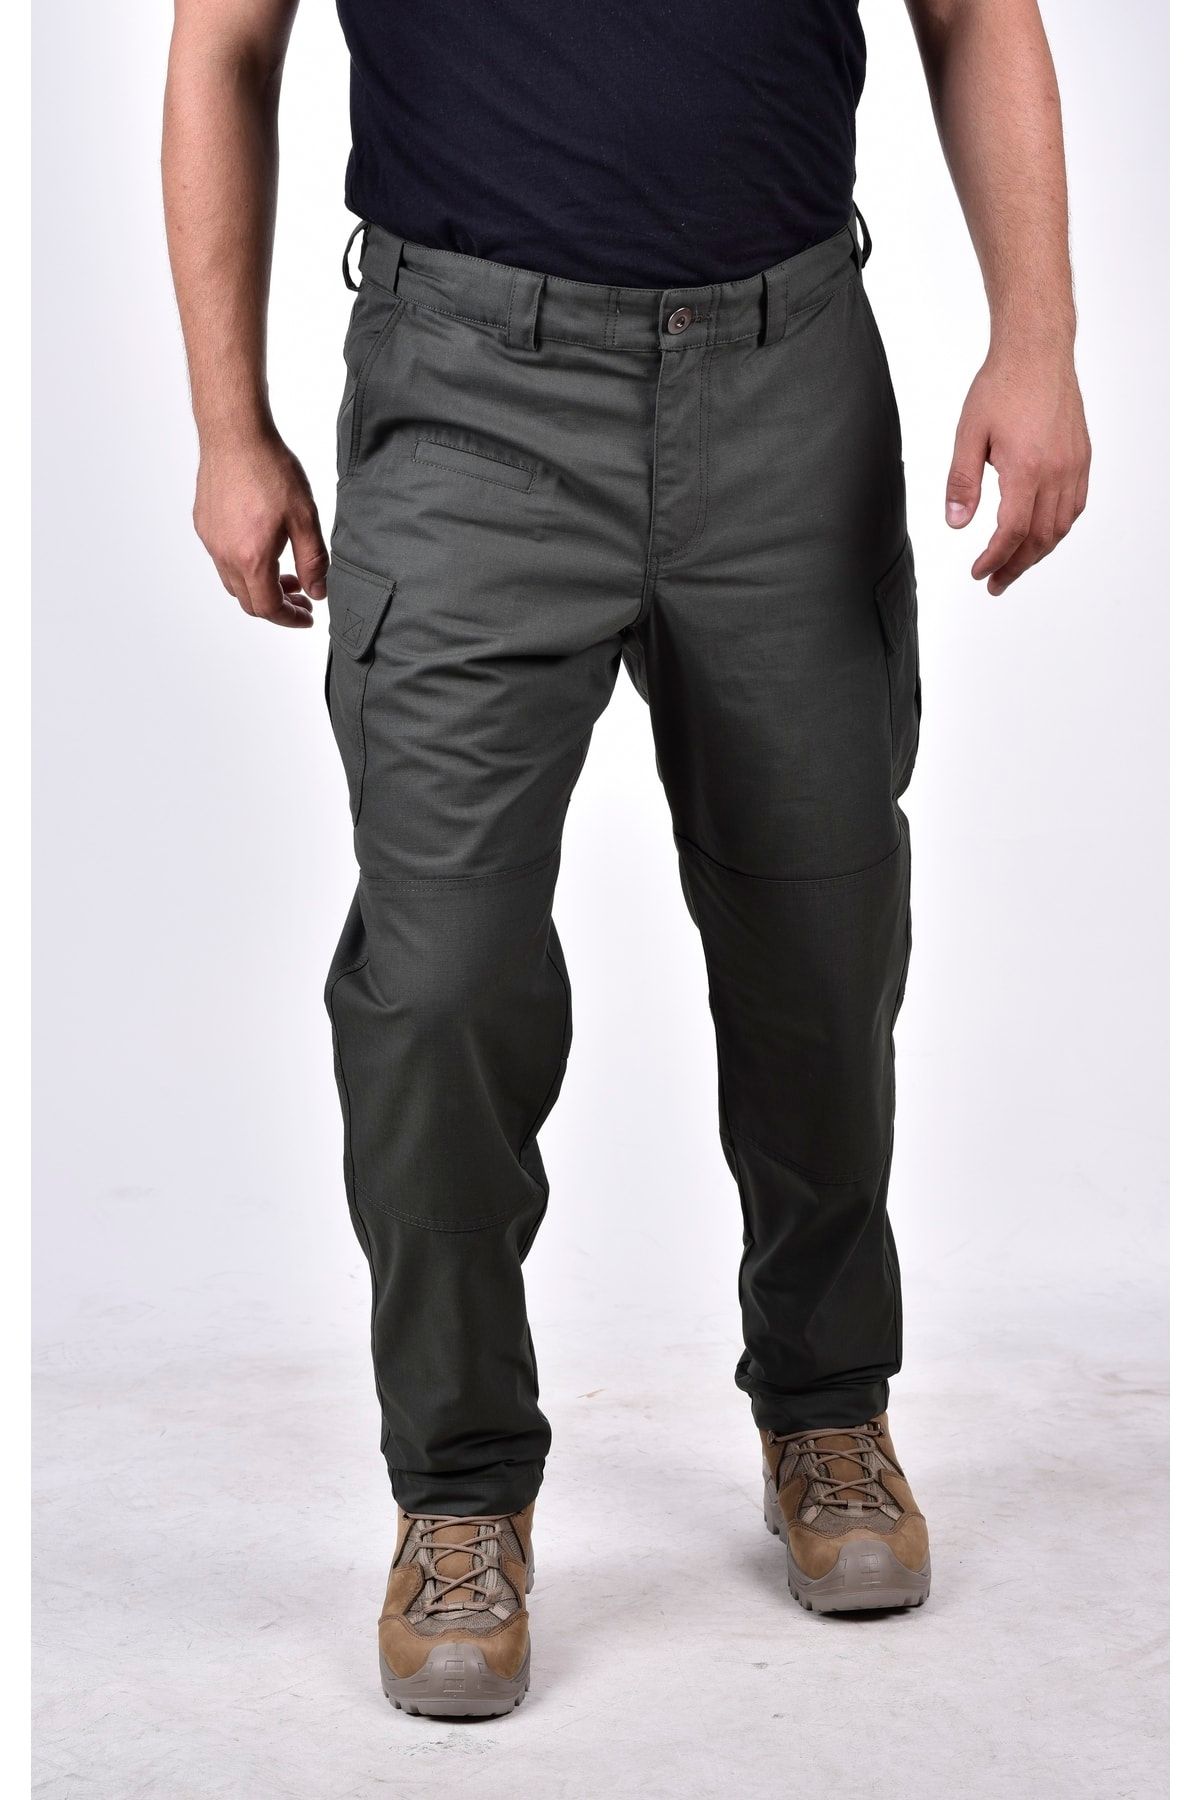 Seba Collection Erkek Haki Likrasız Ripstop Outdoor & Spor Giyim Taktik Pantolon